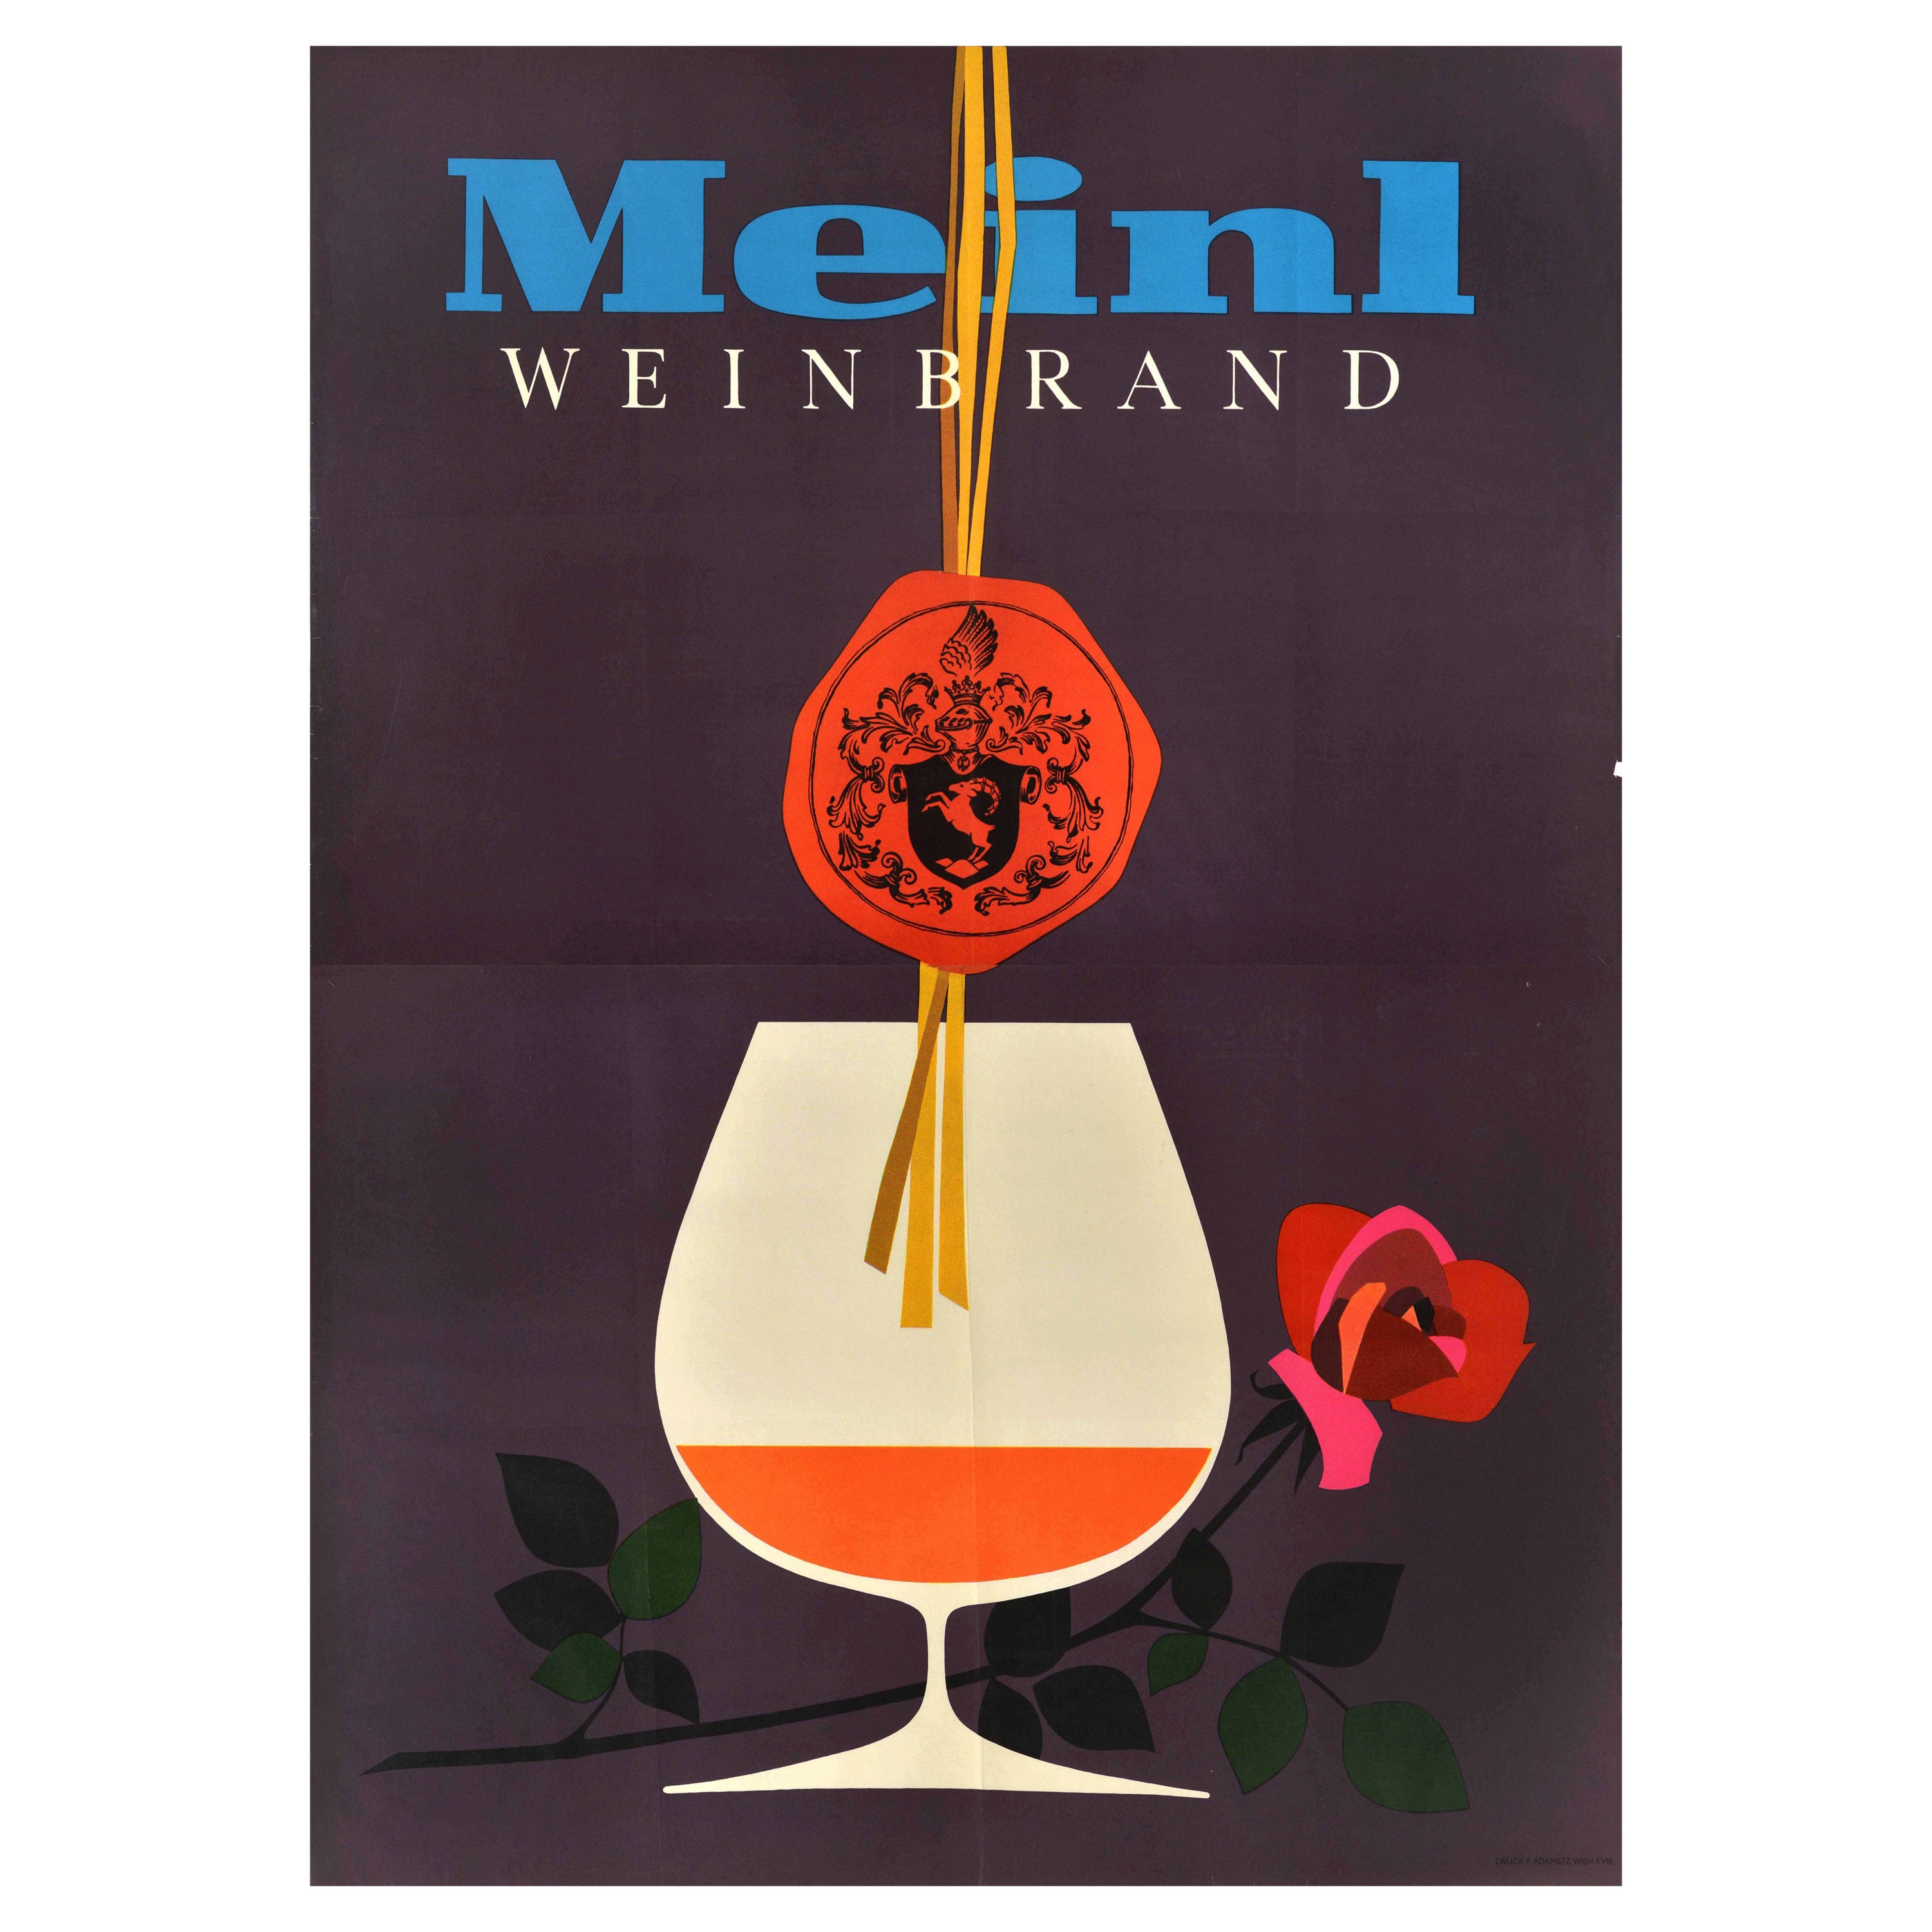 Original-Vintage-Werbeplakat Meinl Weinbrand Brandy, Cognac-Alkoholz im Angebot